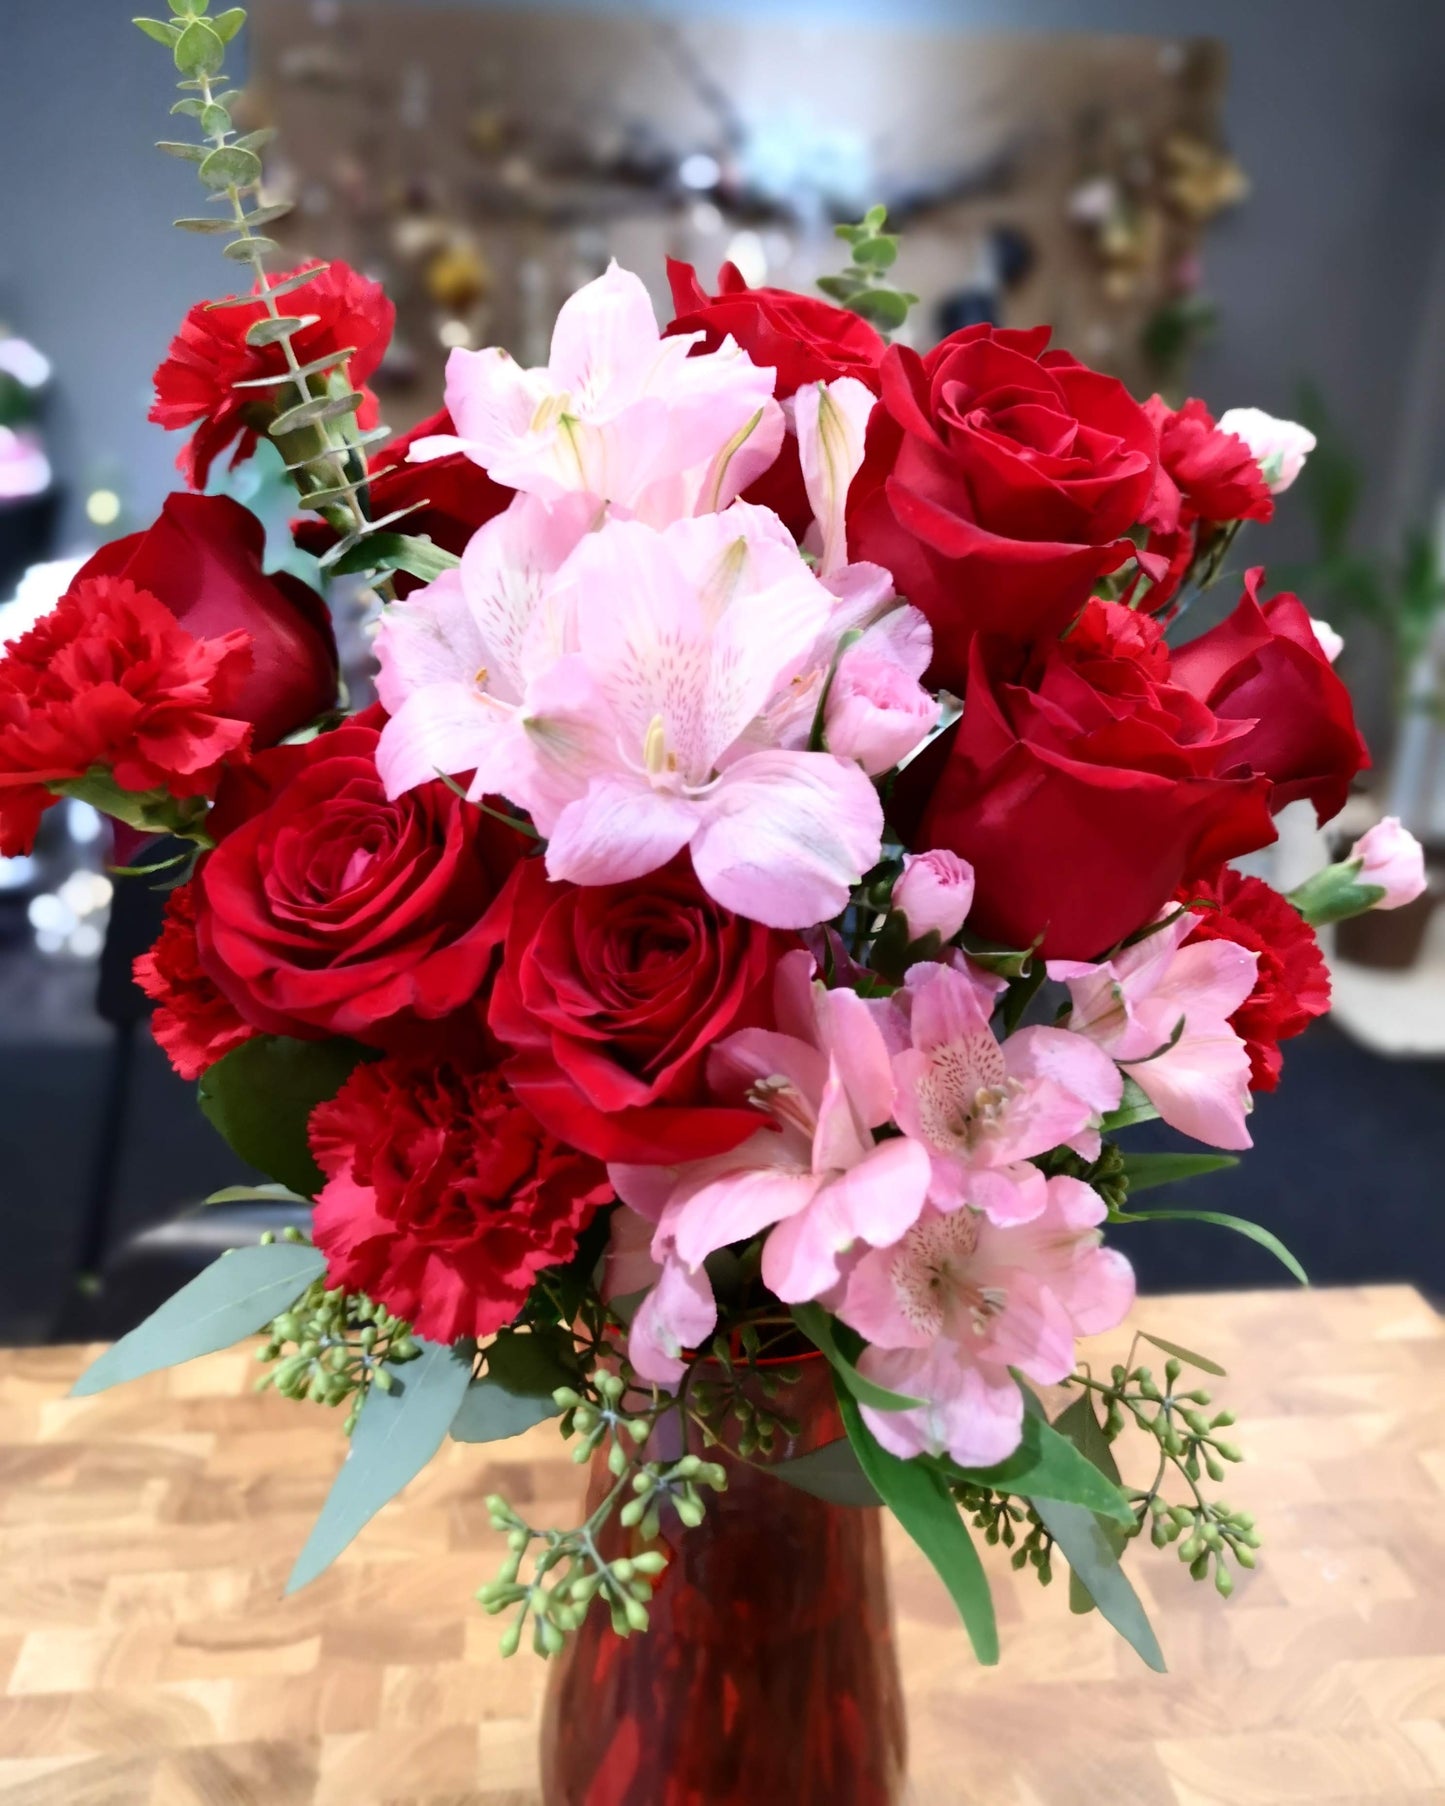 Medium romance vase arrangement